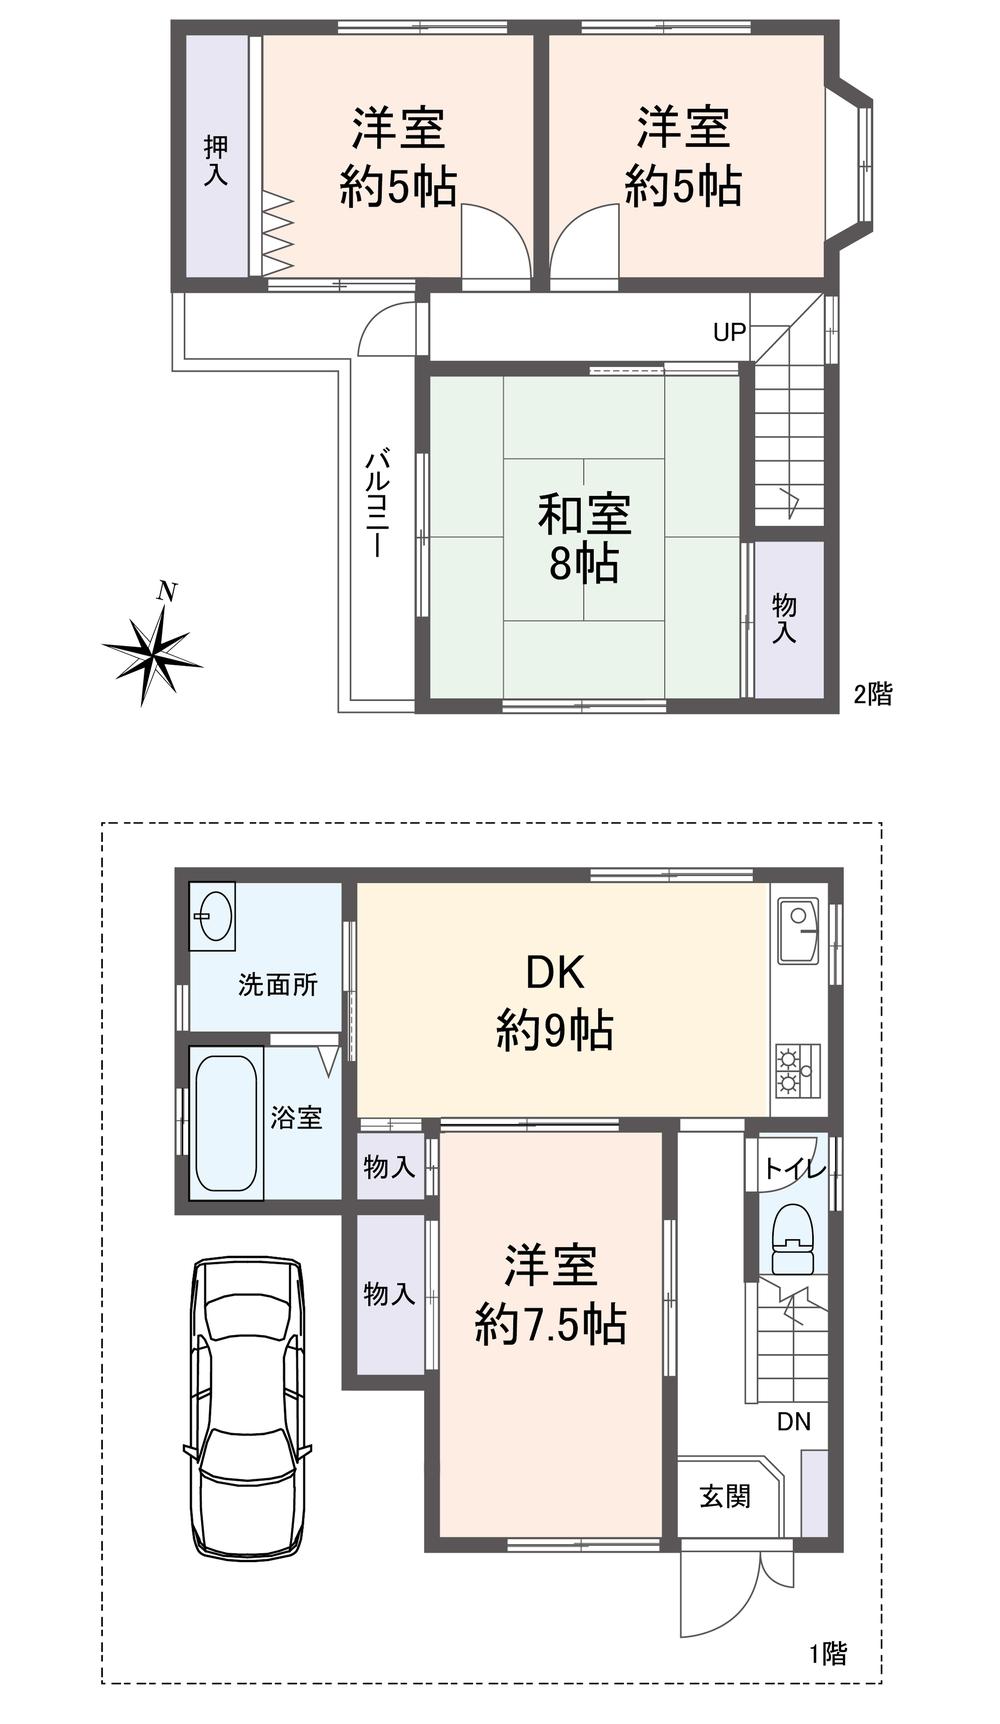 Floor plan. 19,800,000 yen, 4DK, Land area 81.94 sq m , Building area 81.94 sq m